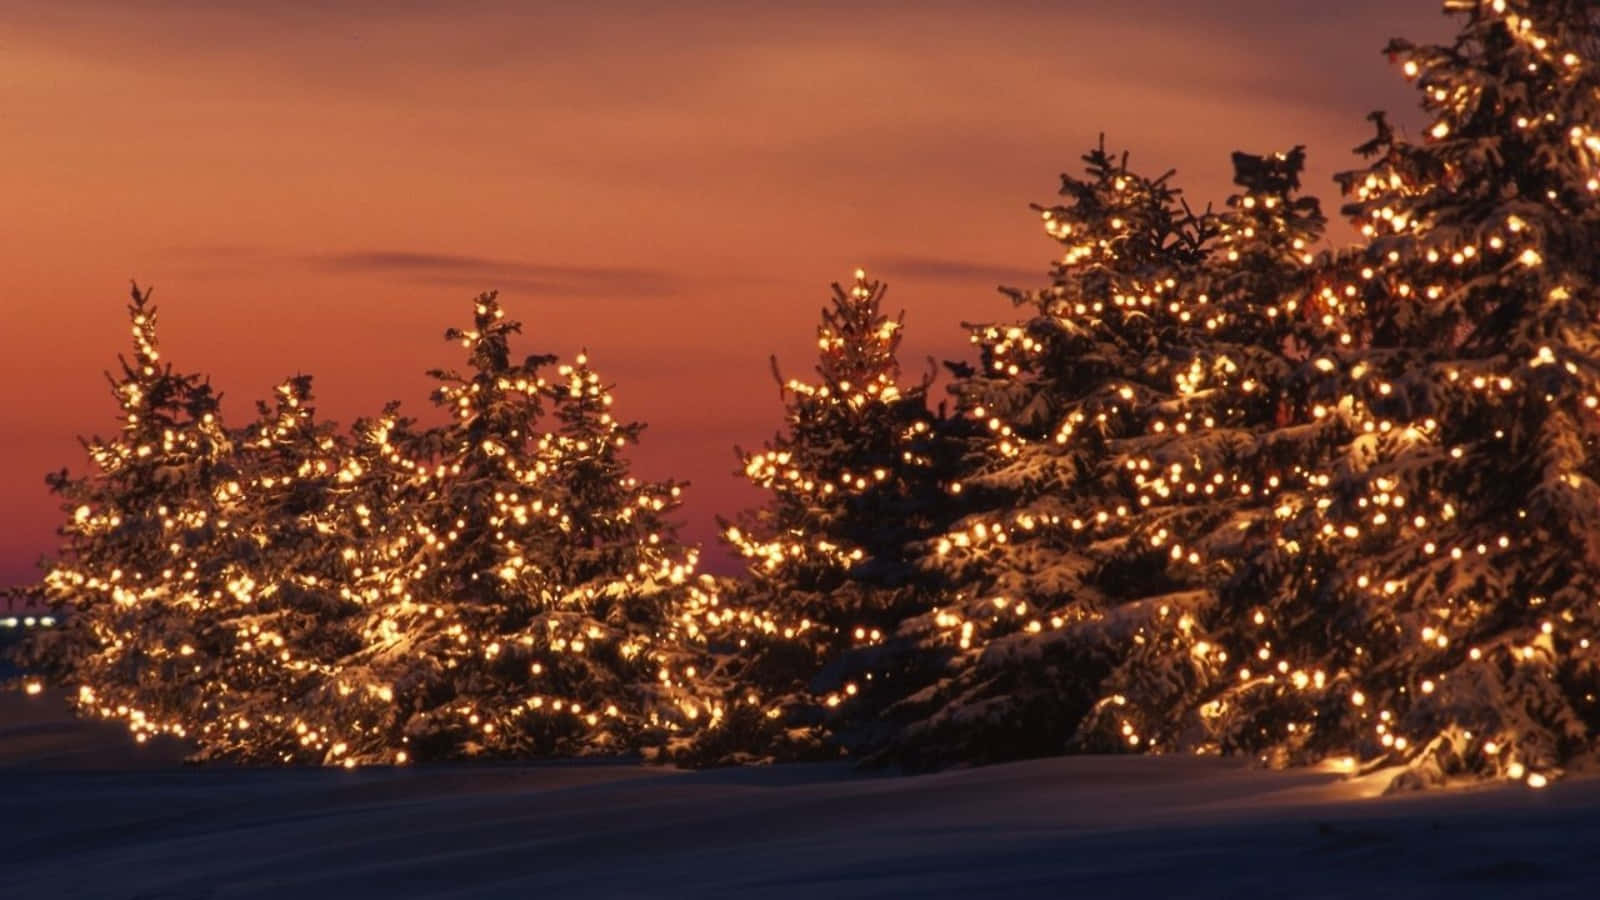 Genießensie Die Festliche Freude Und Fröhlichkeit Von Weihnachten Mit Diesen Wunderschönen, Winterlichen Tumblr-dekorationen! Wallpaper